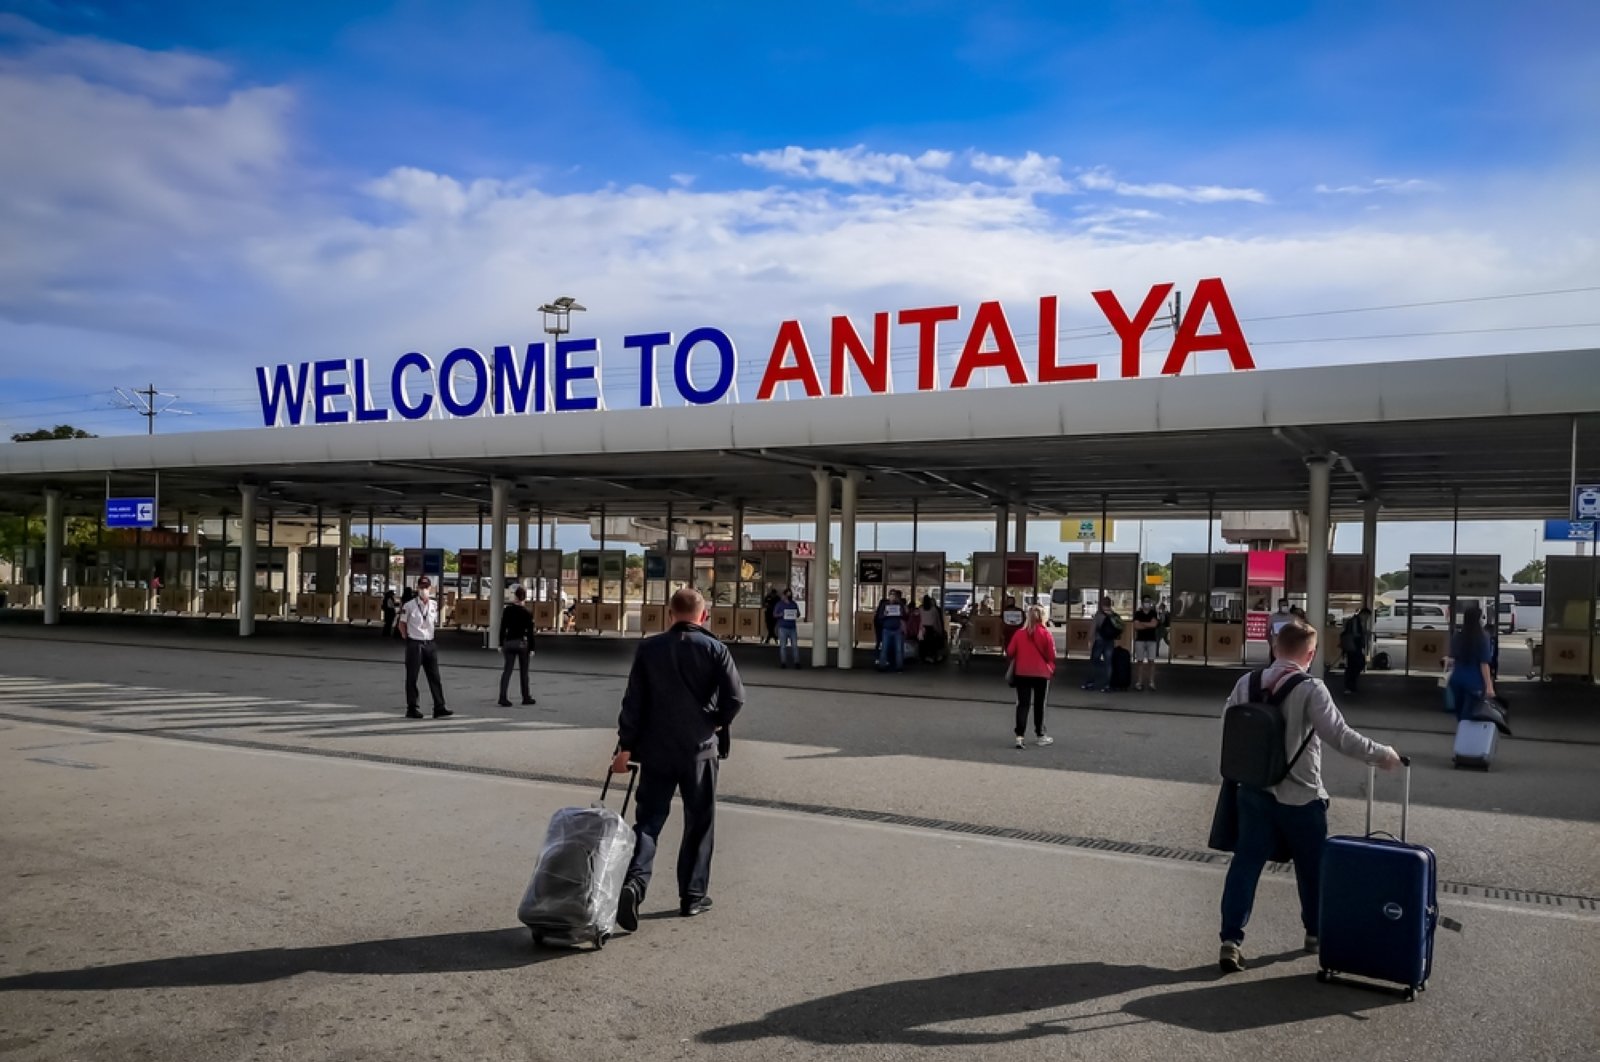 Bank Eropa mengalokasikan 2 juta untuk investasi di bandara Antalya